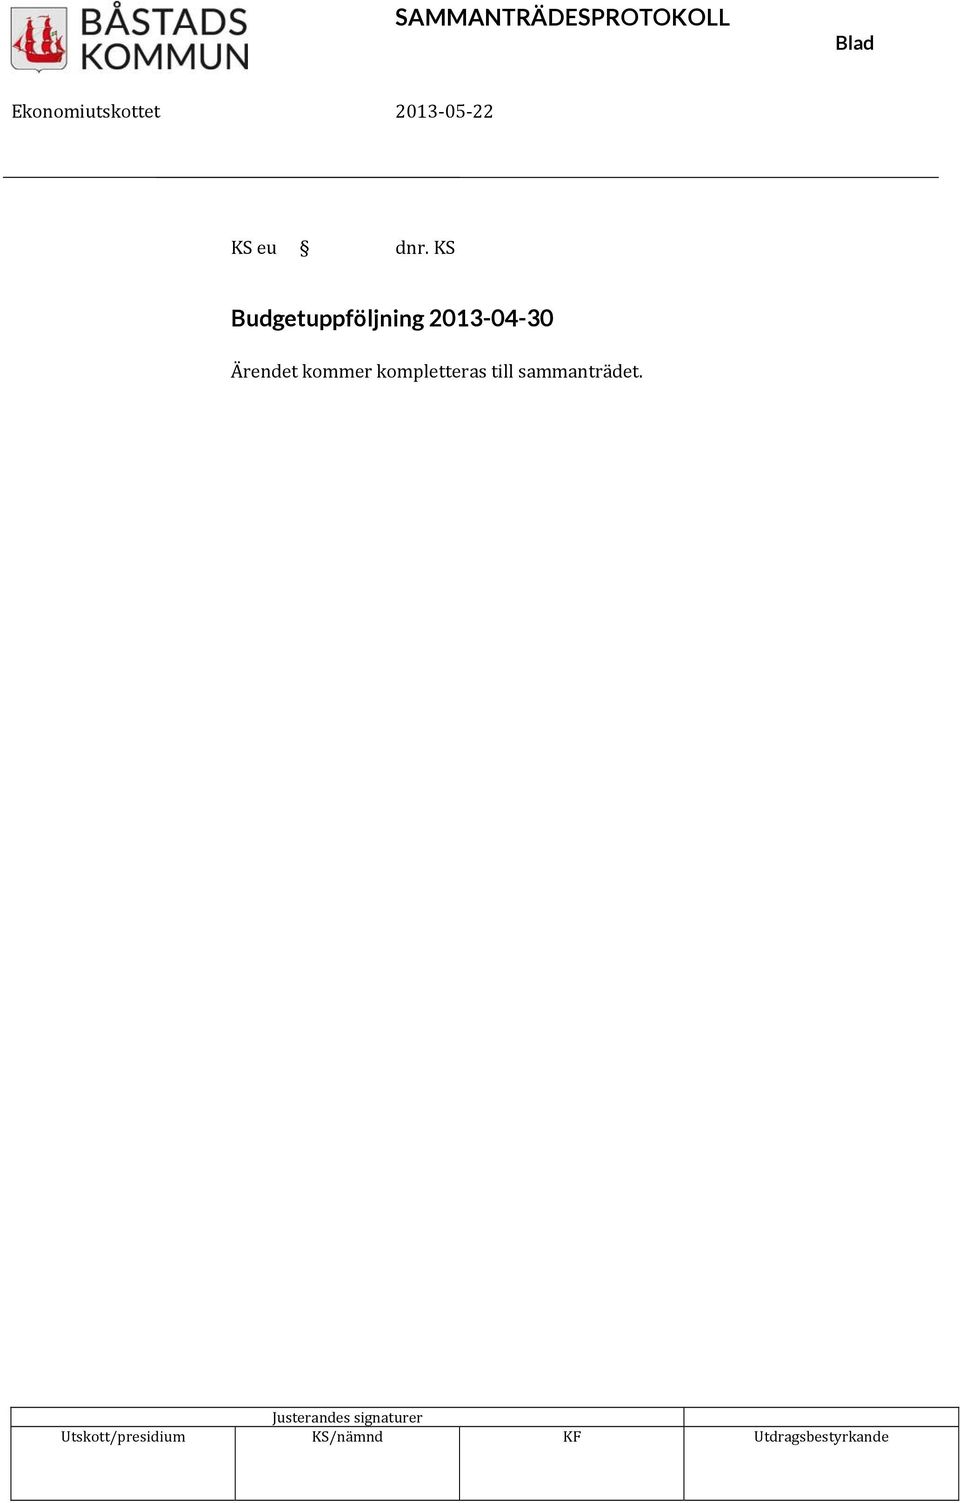 KS Budgetuppföjning 2013-04-30 Ärendet kommer